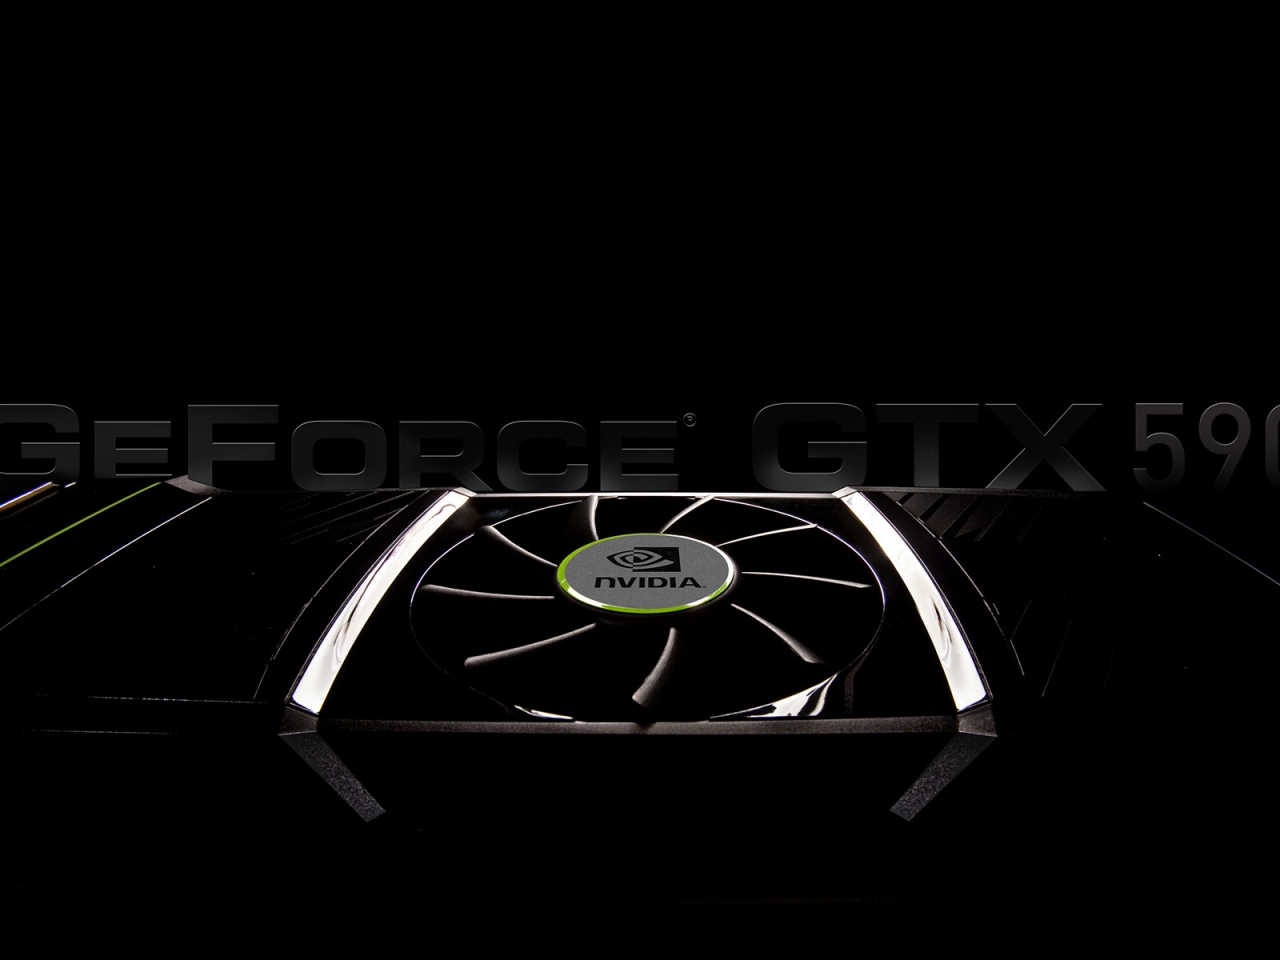 GeForce GTX 590 for 1280 x 960 resolution